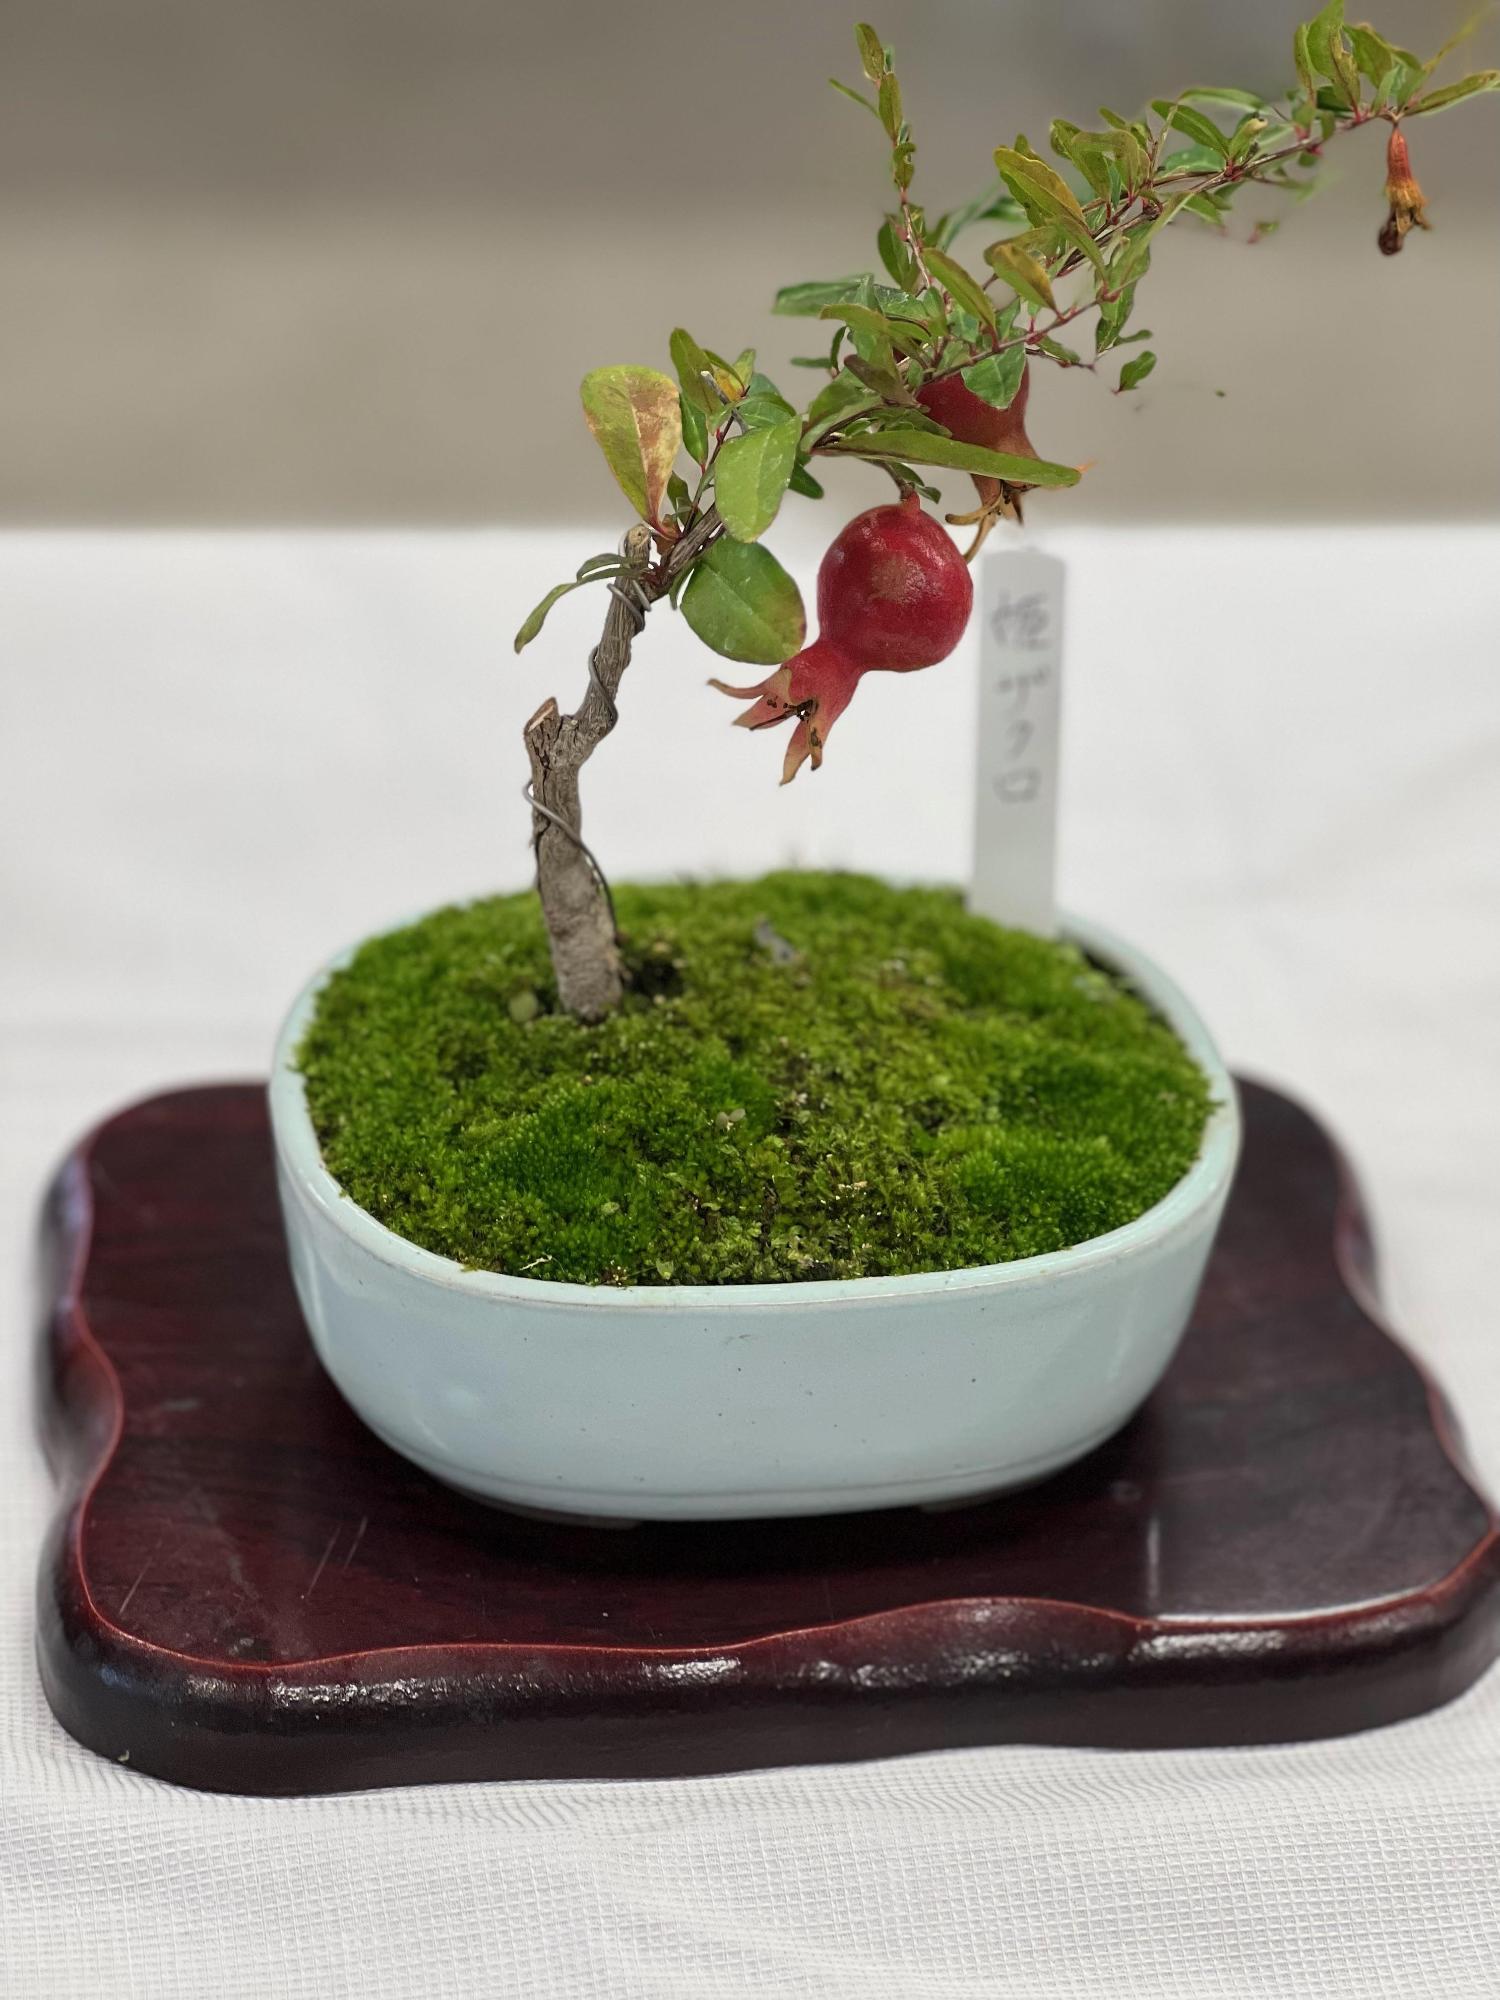 手のひらサイズの白い陶器に姫ザクロの木。赤い実が2つ生っていて、根元には苔が敷いてあり小さな庭のようです。